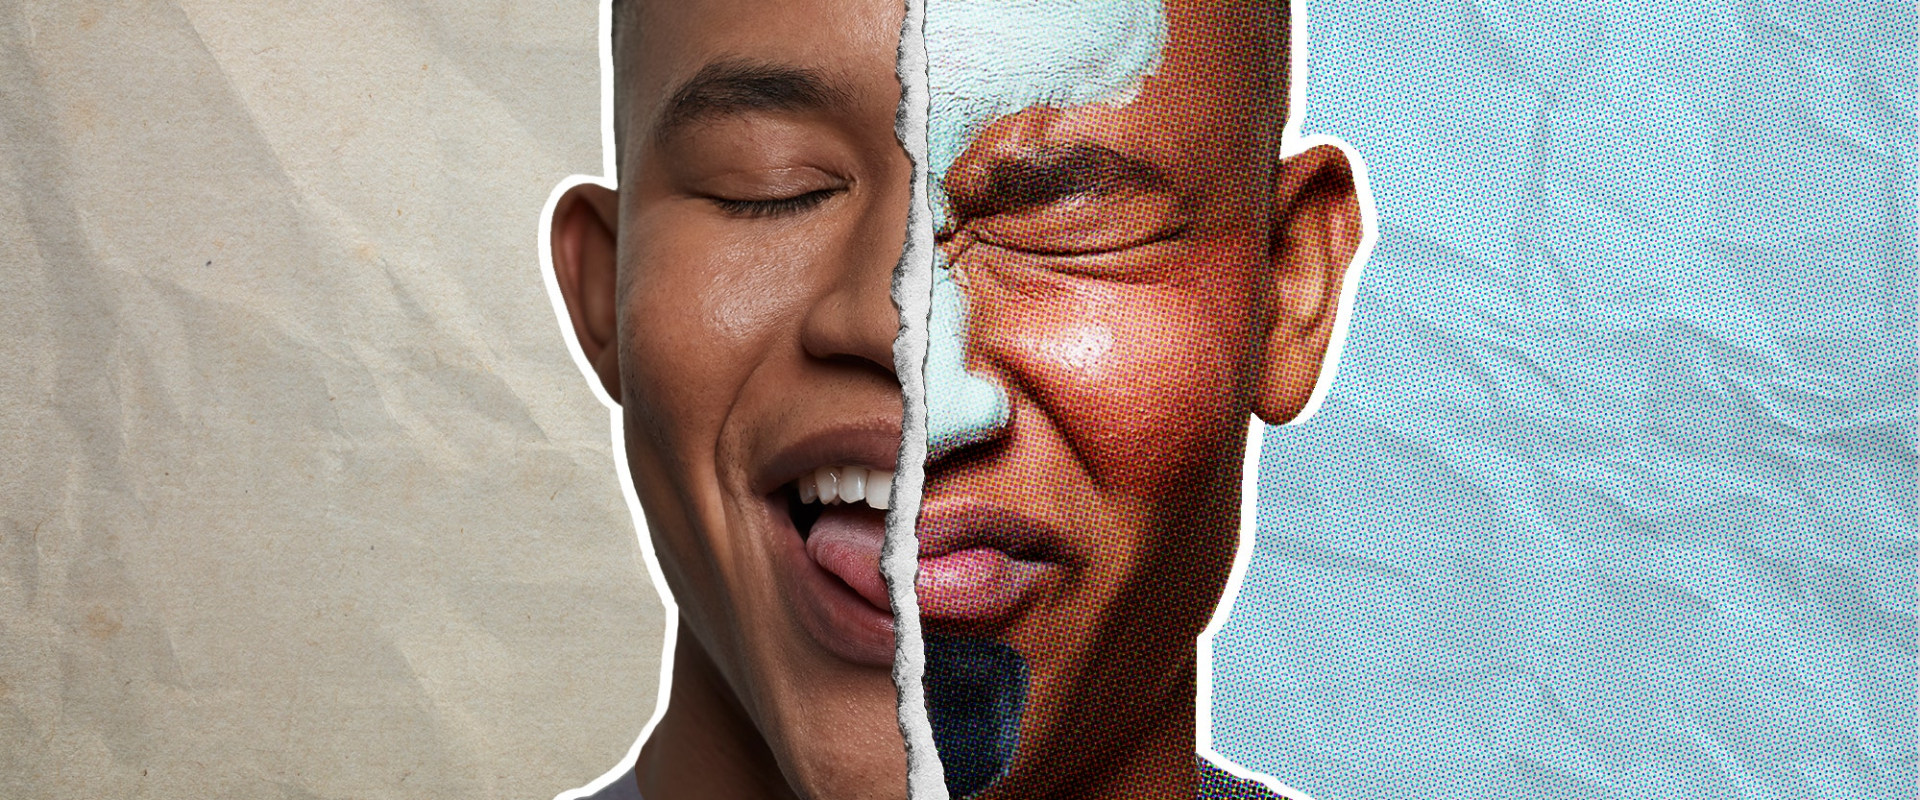 Quanto spesso gli uomini dovrebbero usare i prodotti per il viso?